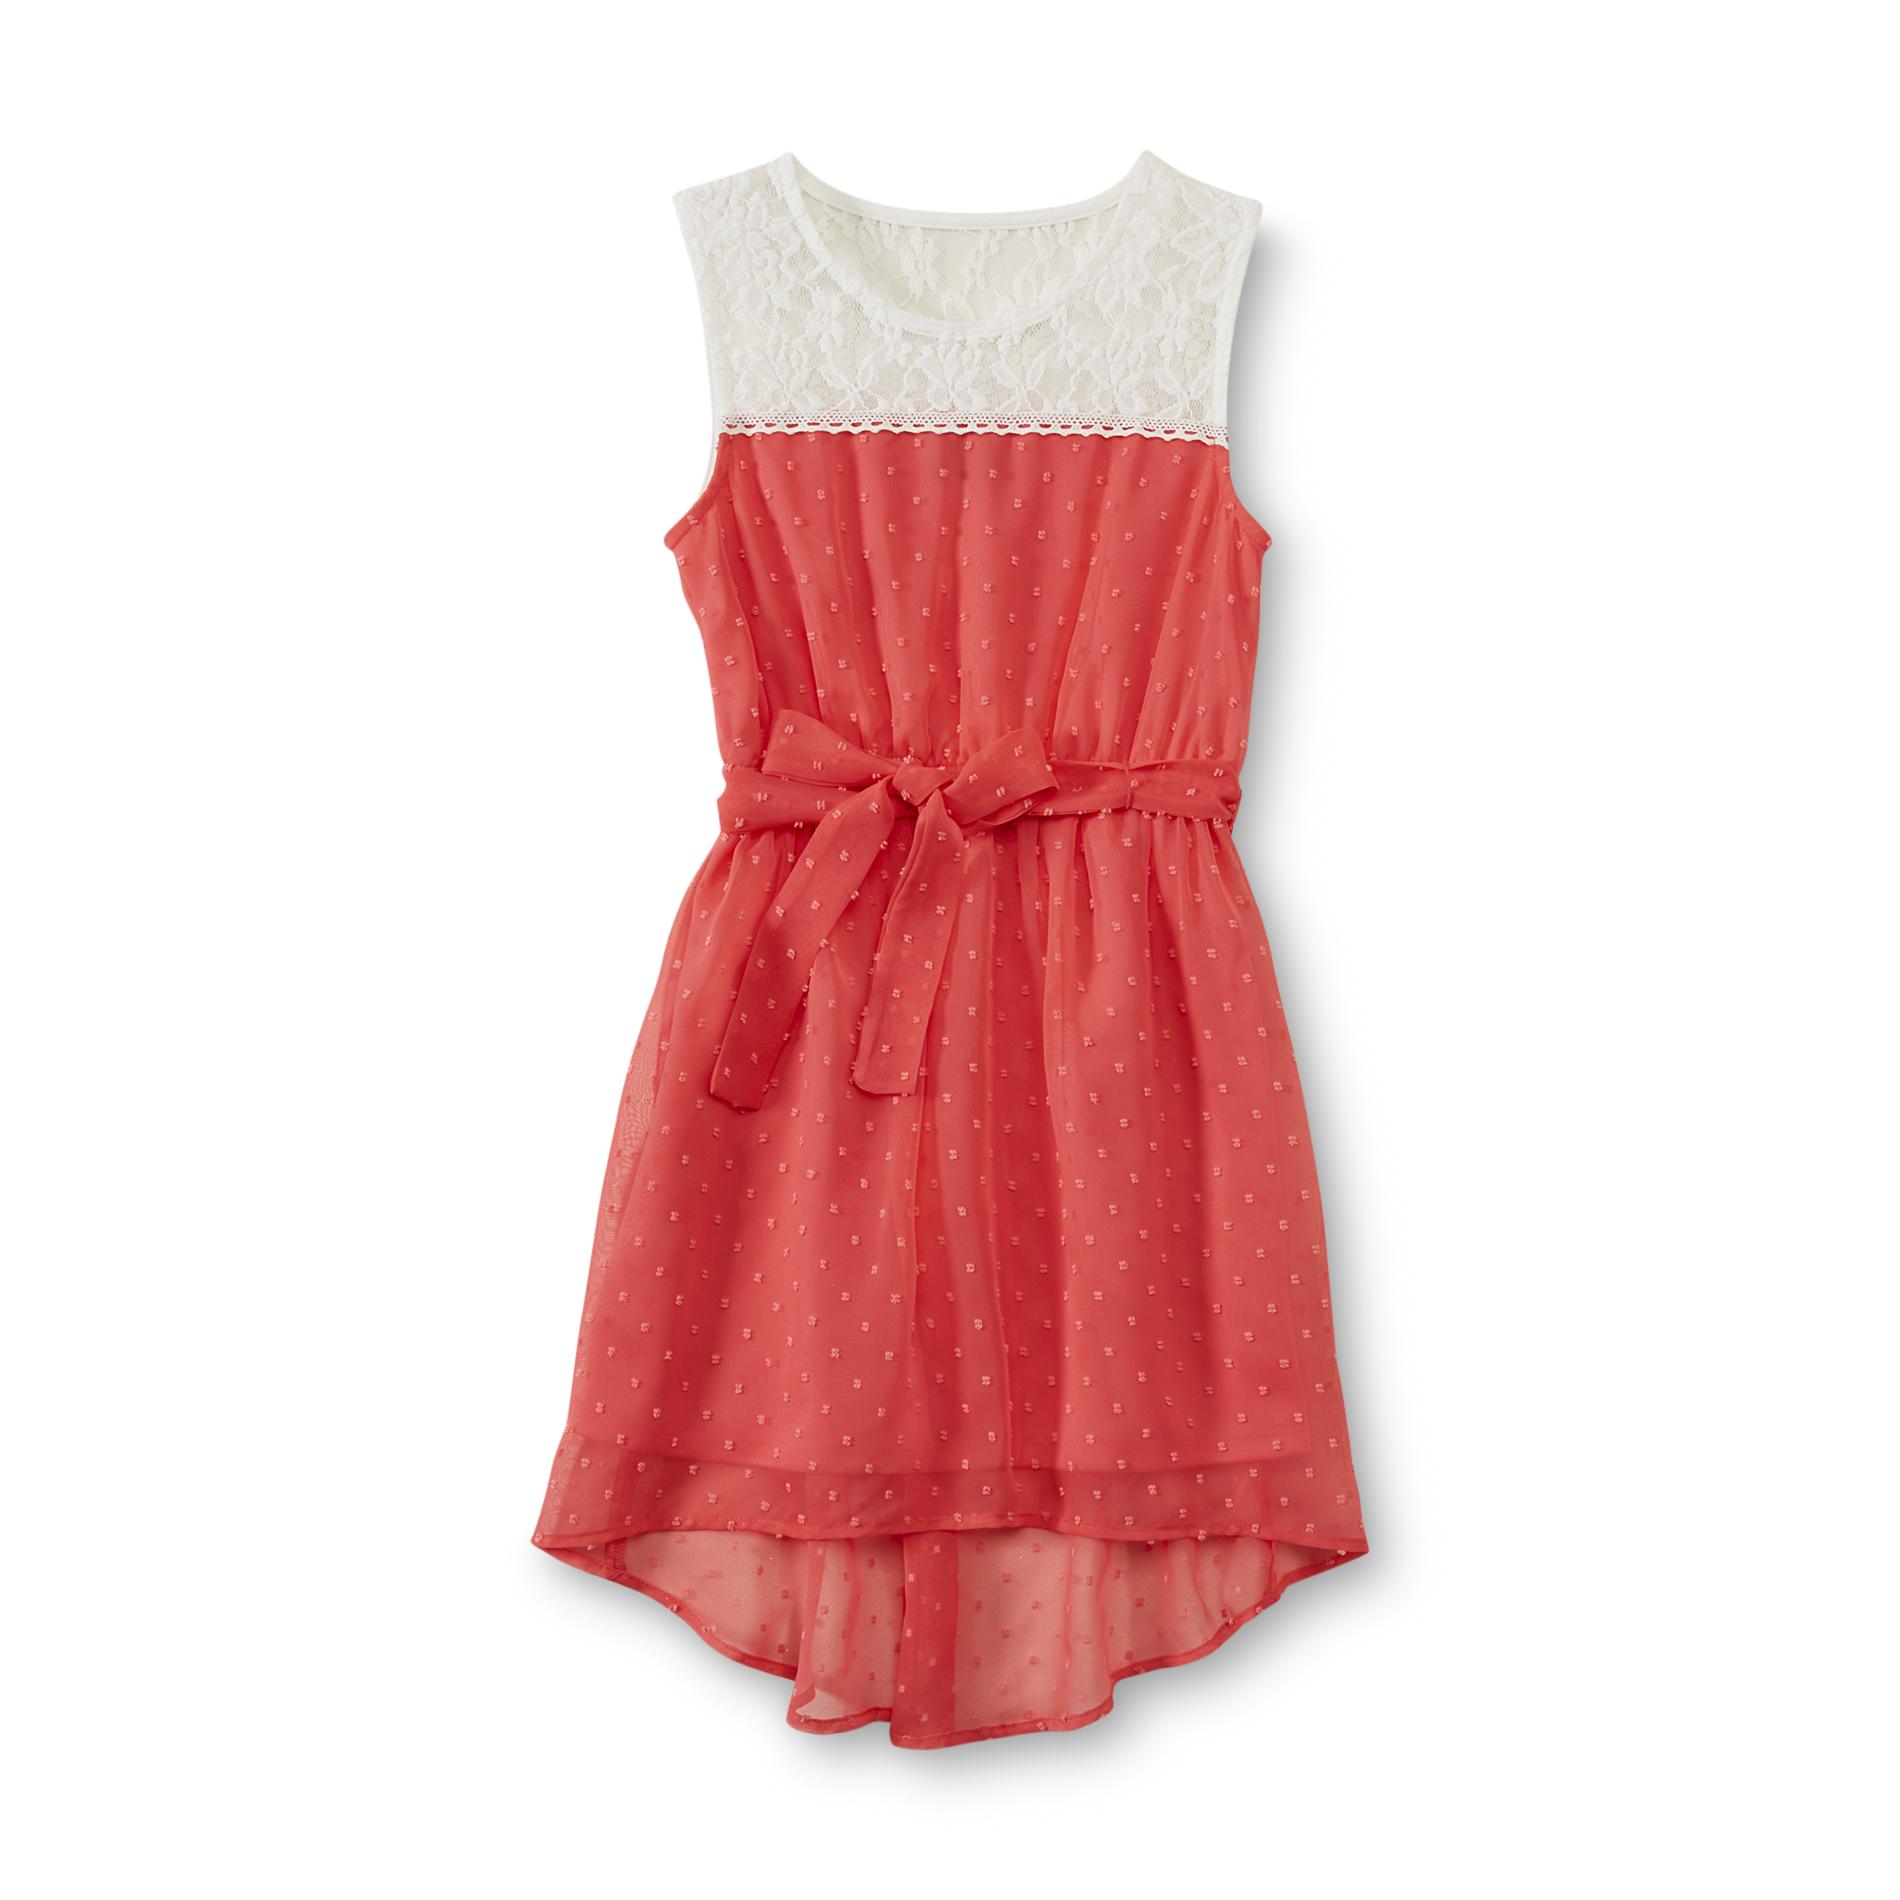 Holiday Editions Girl's Sleeveless Lace & Chiffon Dress